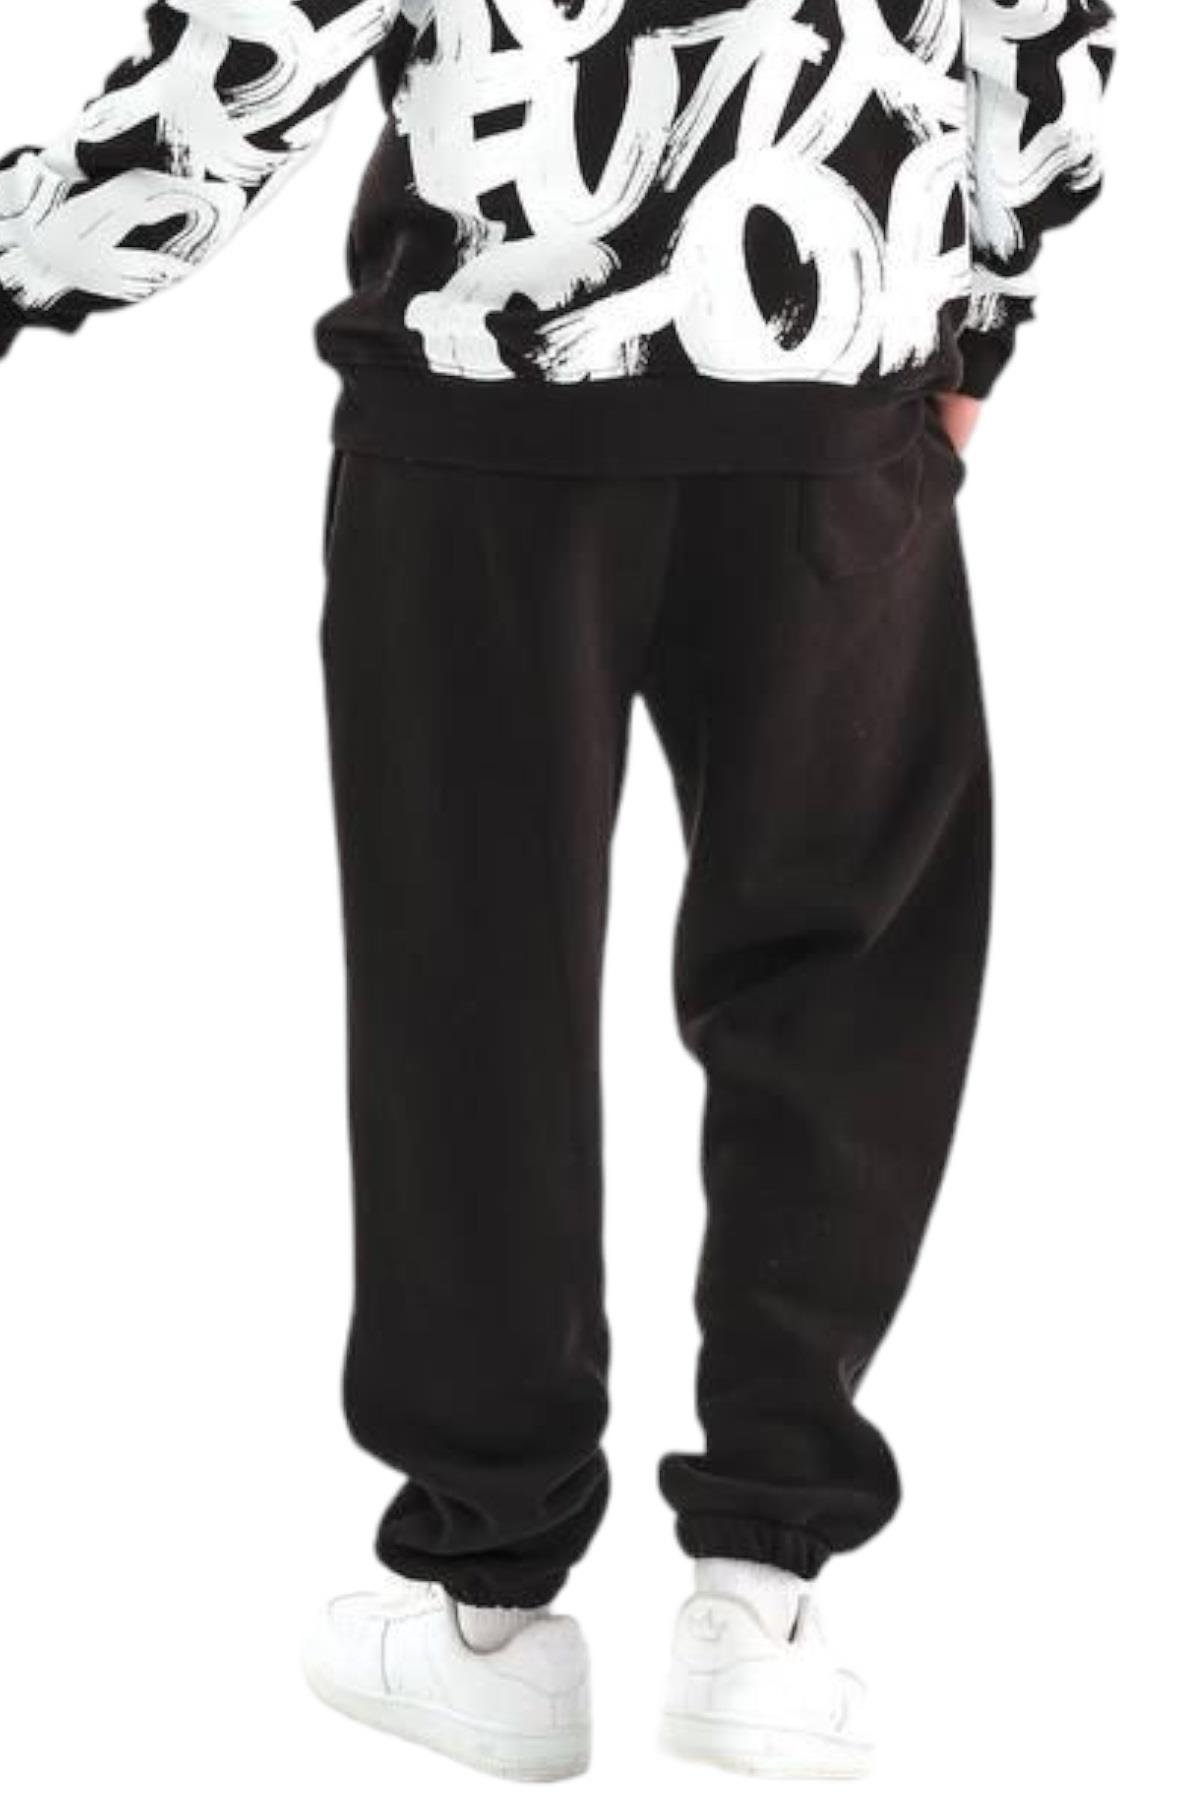 Mojo Erkek Genç Giyim Paçası Lastikli Şardonlu Eşofman Altı 3008 Siyah